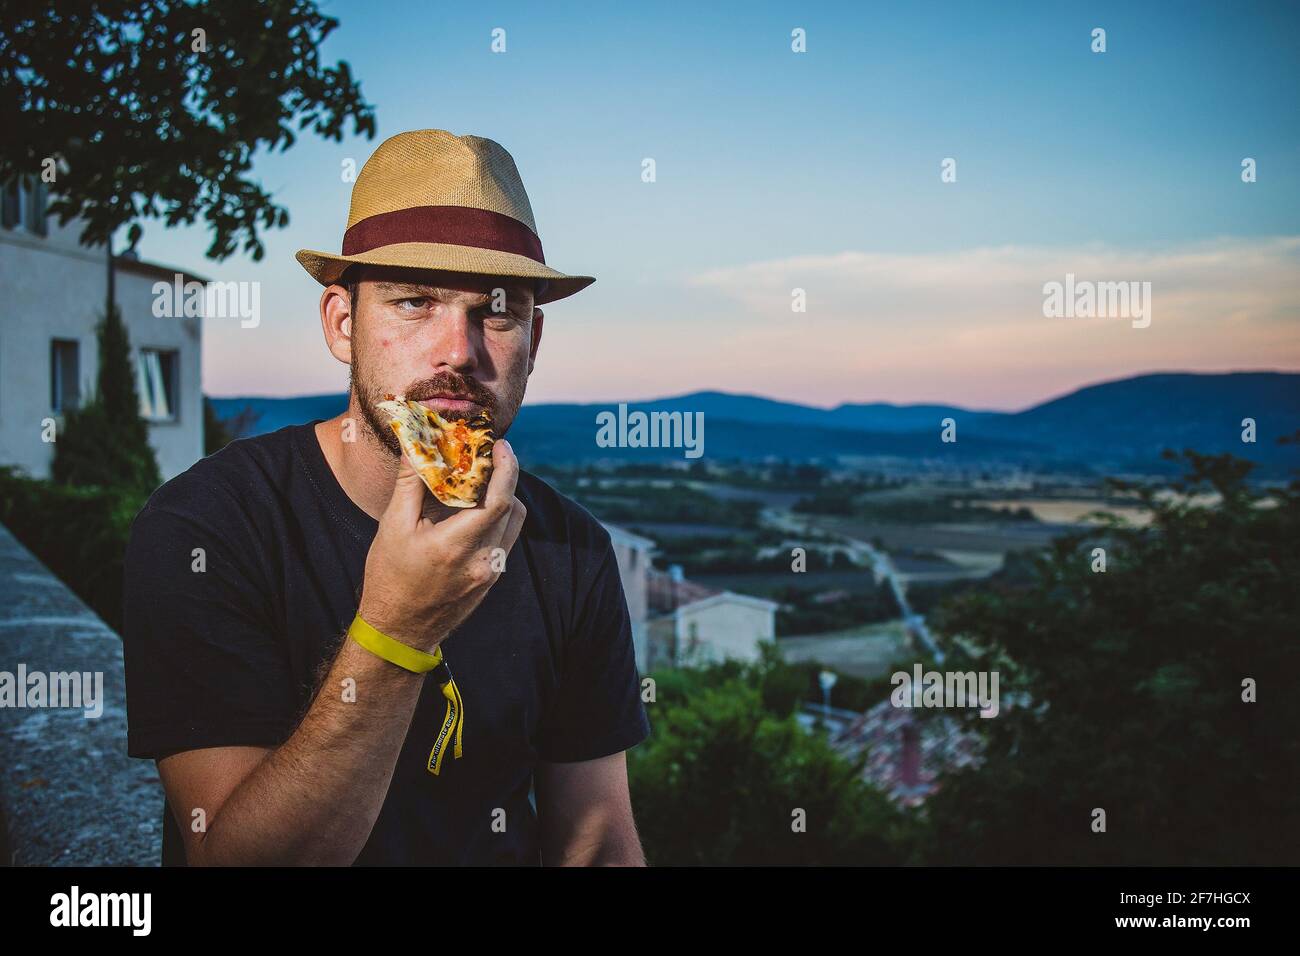 Hipster aussehender Mann mit Strohhut, der abends eine Pizza hält und mit einer französischen Landschaft im Hintergrund isst. Stockfoto